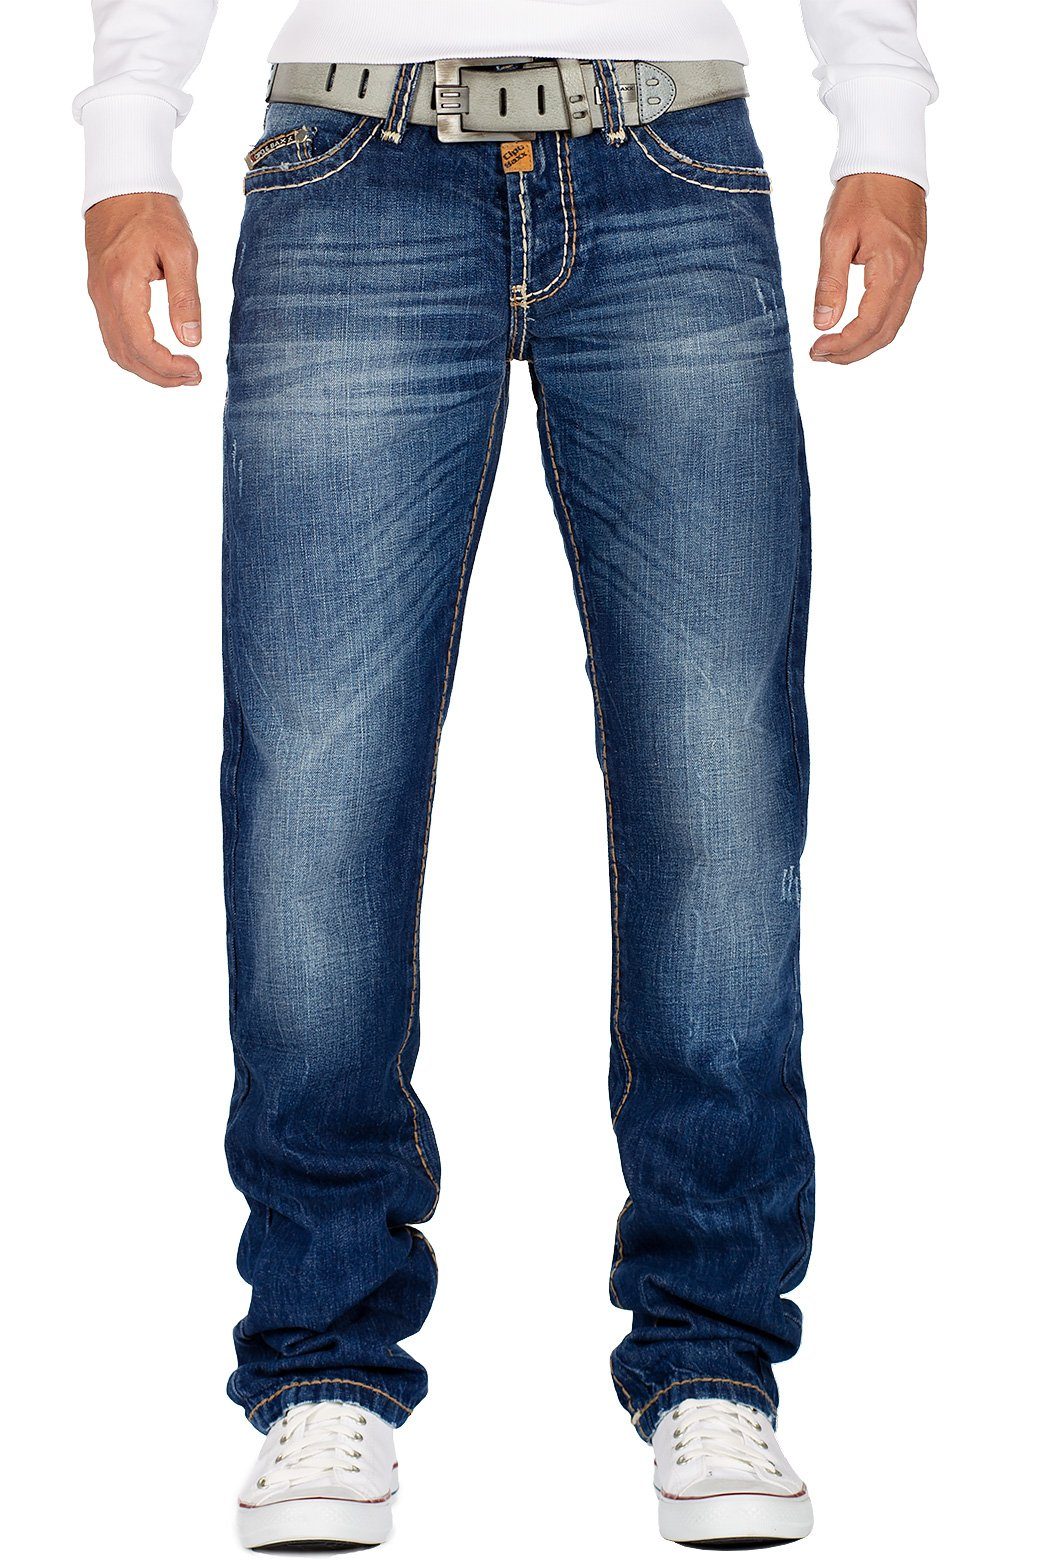 Herren Jeans Cipo & Baxx 5-Pocket-Jeans Cipo & Baxx Herren Jeans BA-C0688 mit dicken Nähten und Patch